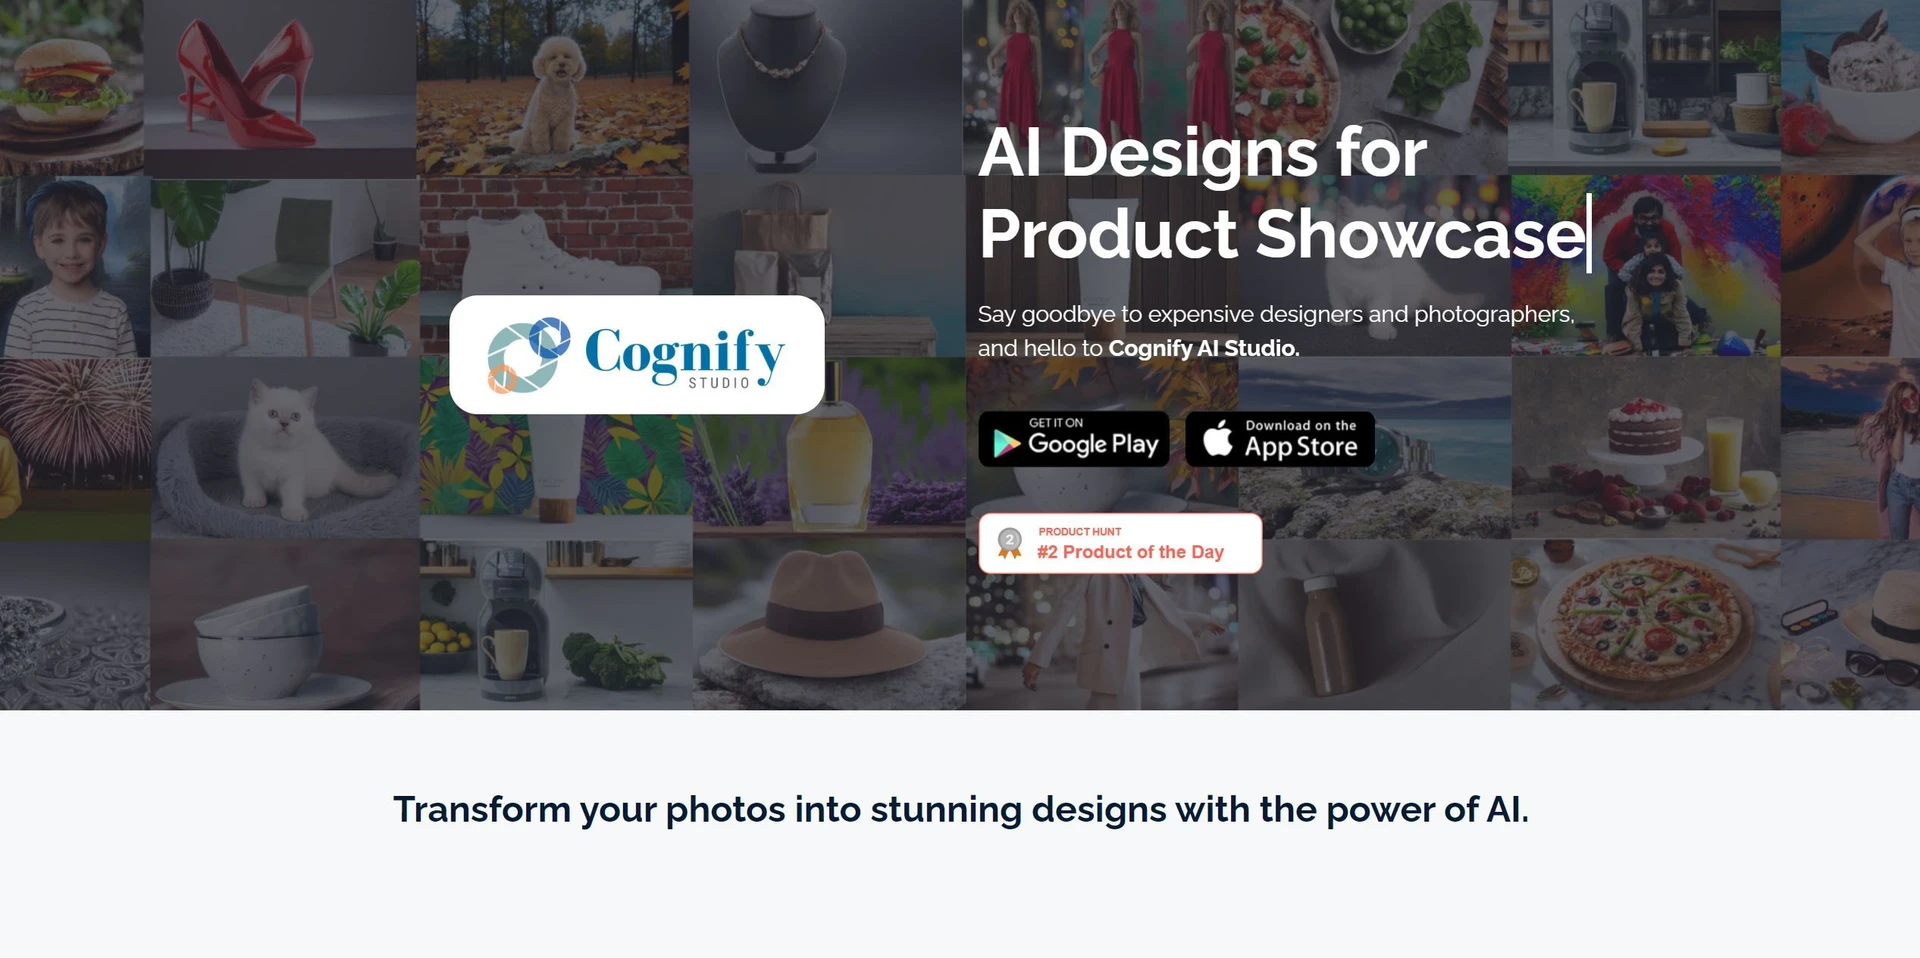 Cognify Studiowebsite picture